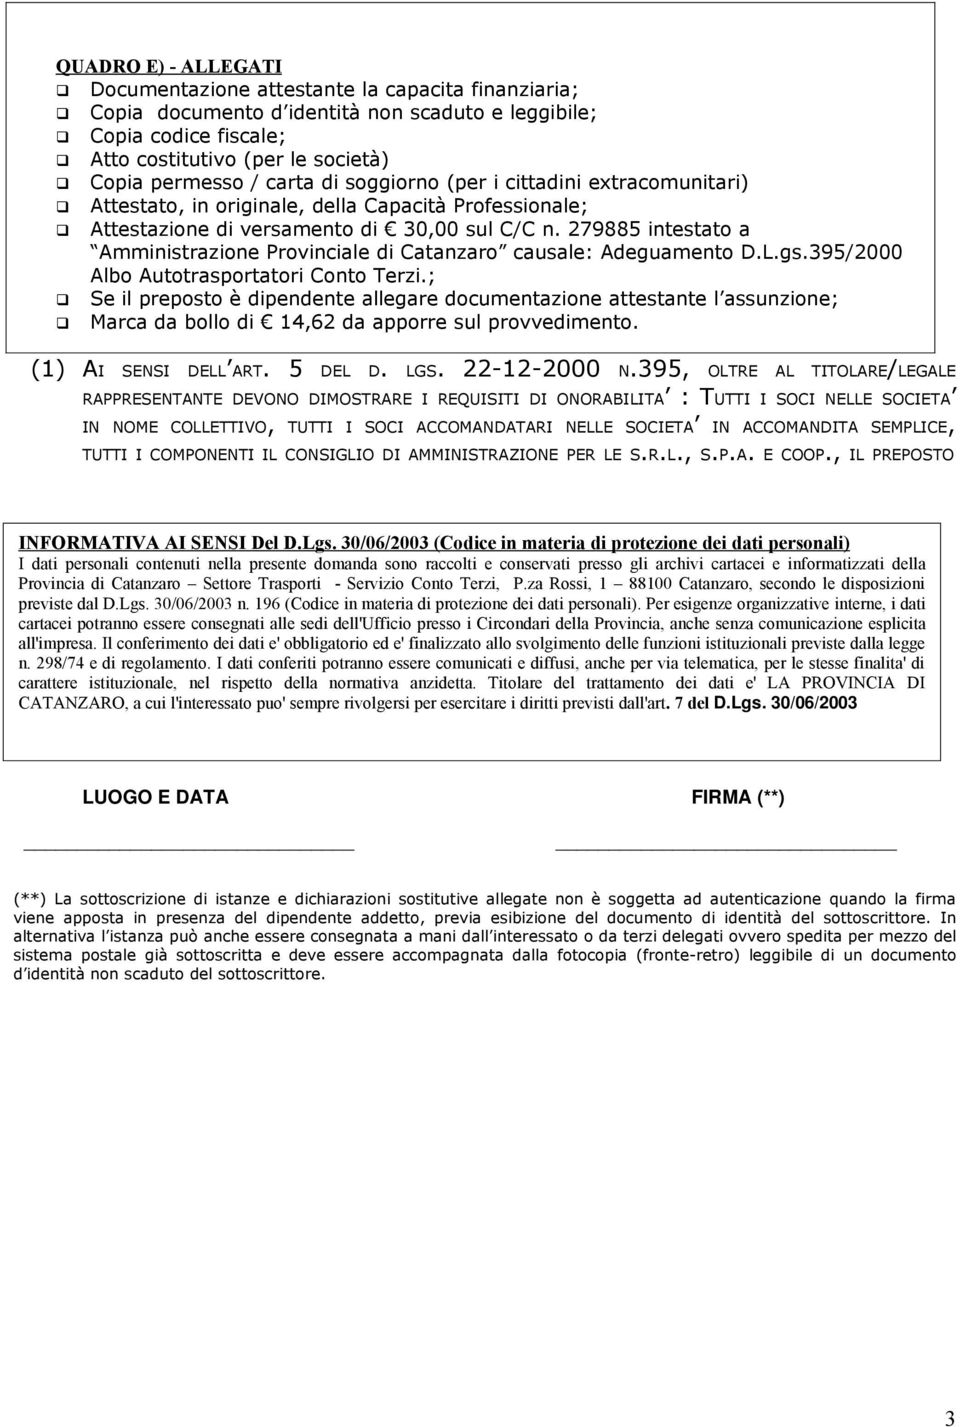 279885 intestato a Amministrazione Provinciale di Catanzaro causale: Adeguamento D.L.gs.395/2000 Albo Autotrasportatori Conto Terzi.